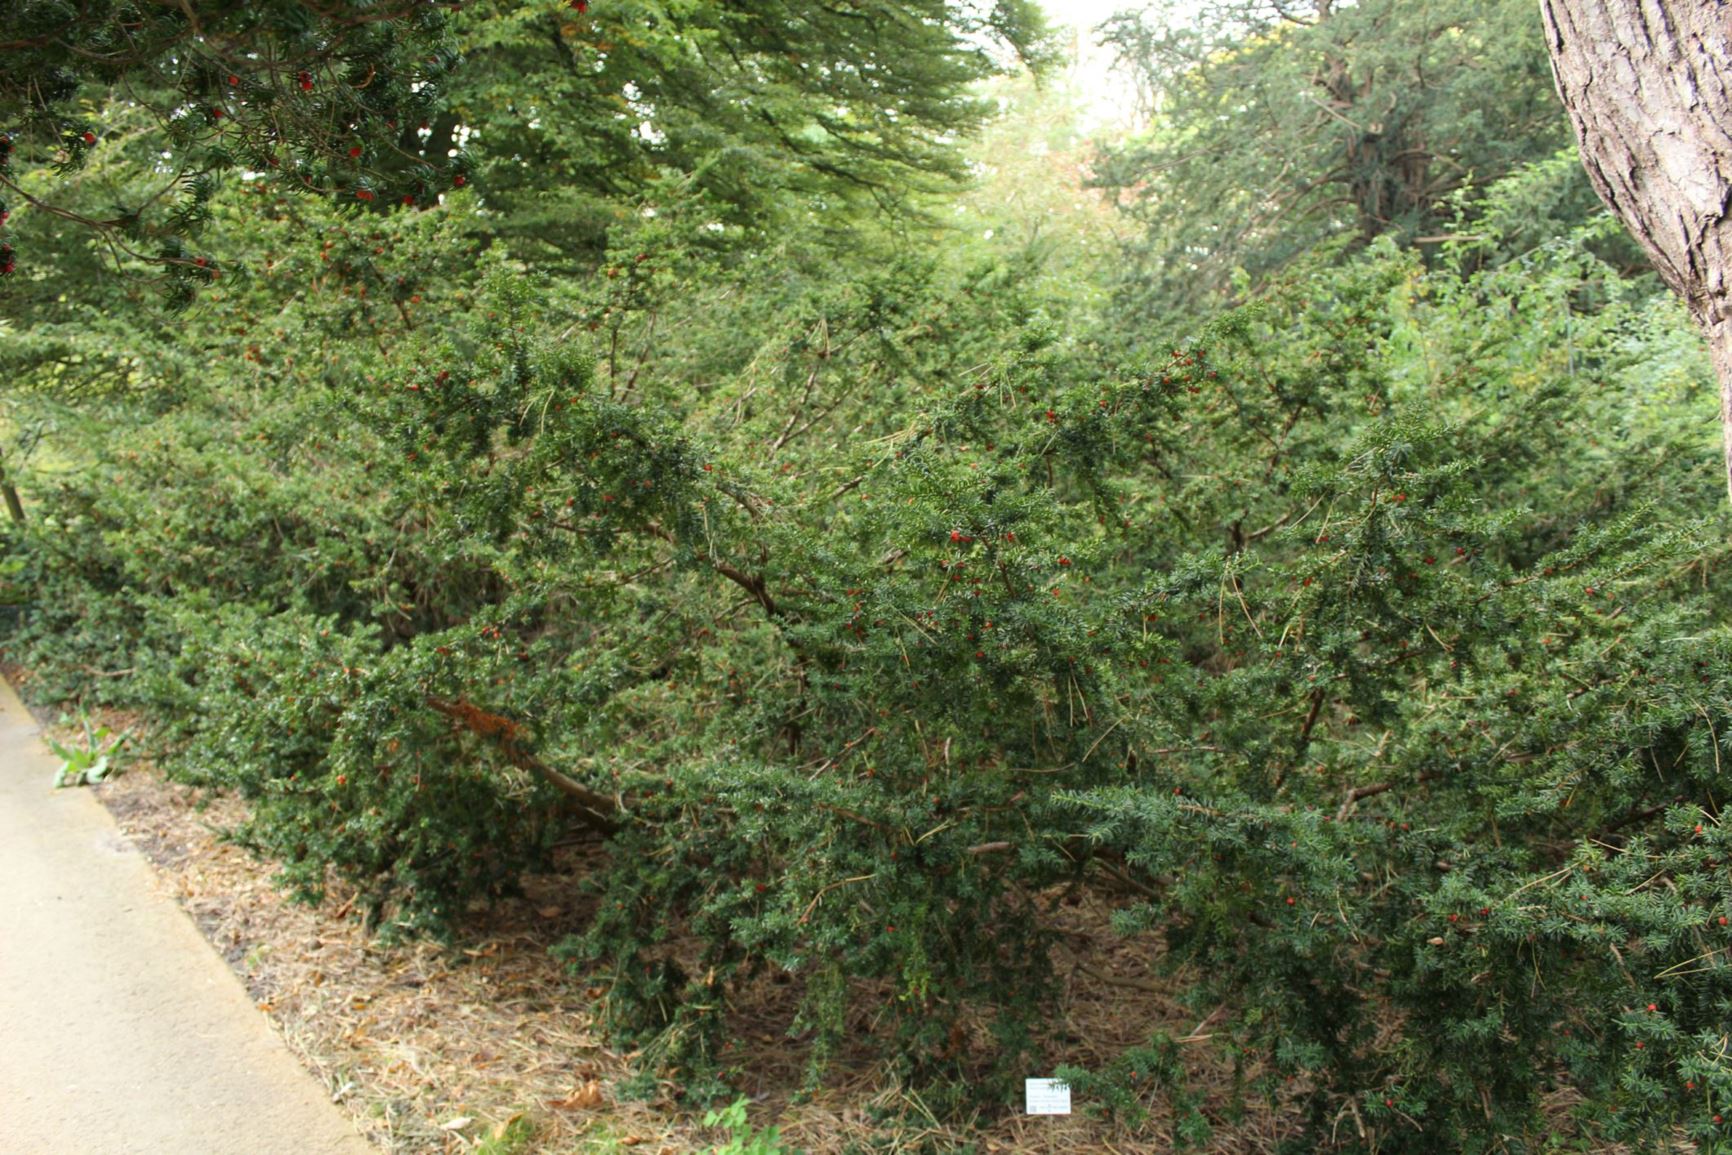 Taxus cuspidata var. nana - Japanse venijnboom, Japanese Yew